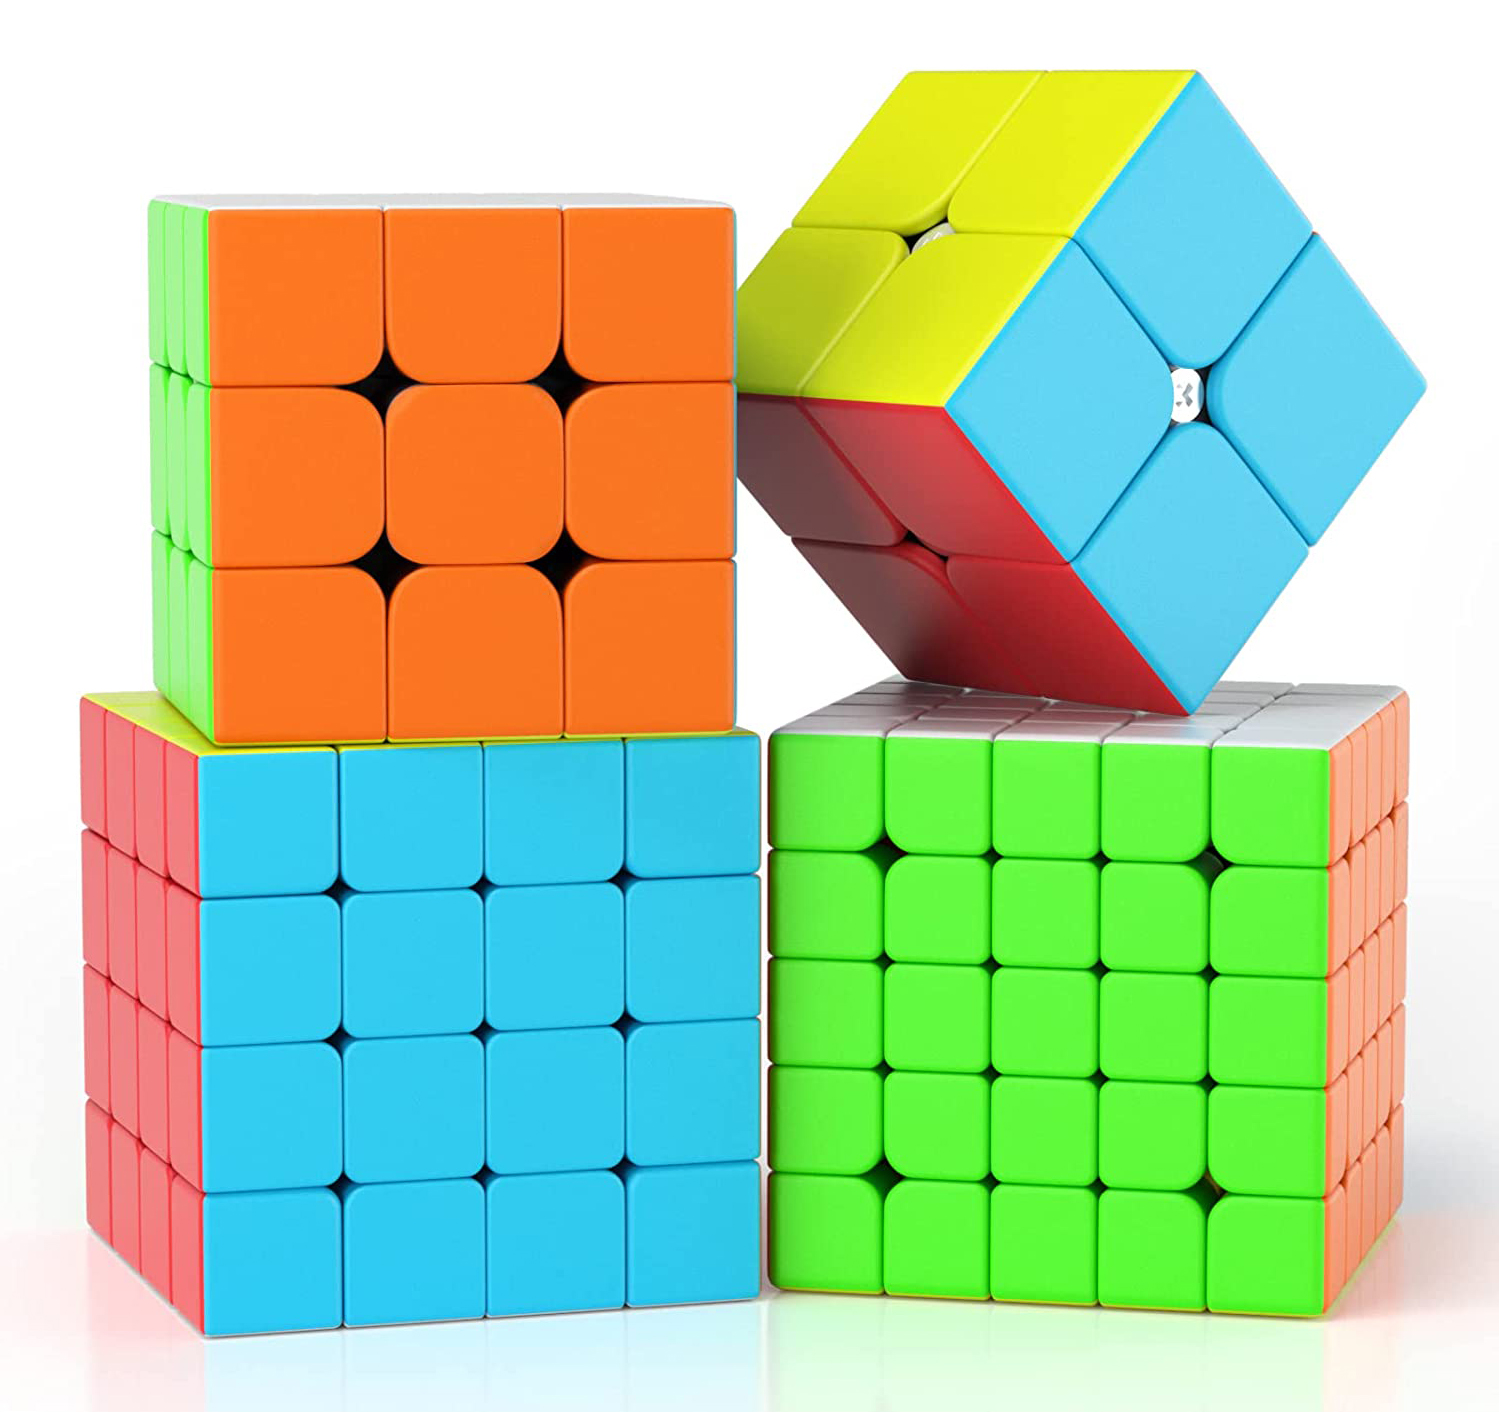 正規品ルービックキューブ マジックキューブ 競技版 Cube Magic 回転スムーズ 知育玩具 (4個セット)ステッカーレス プロ向け 魔方 2×2、3×3、4×4、5×5  安定感 ホビー